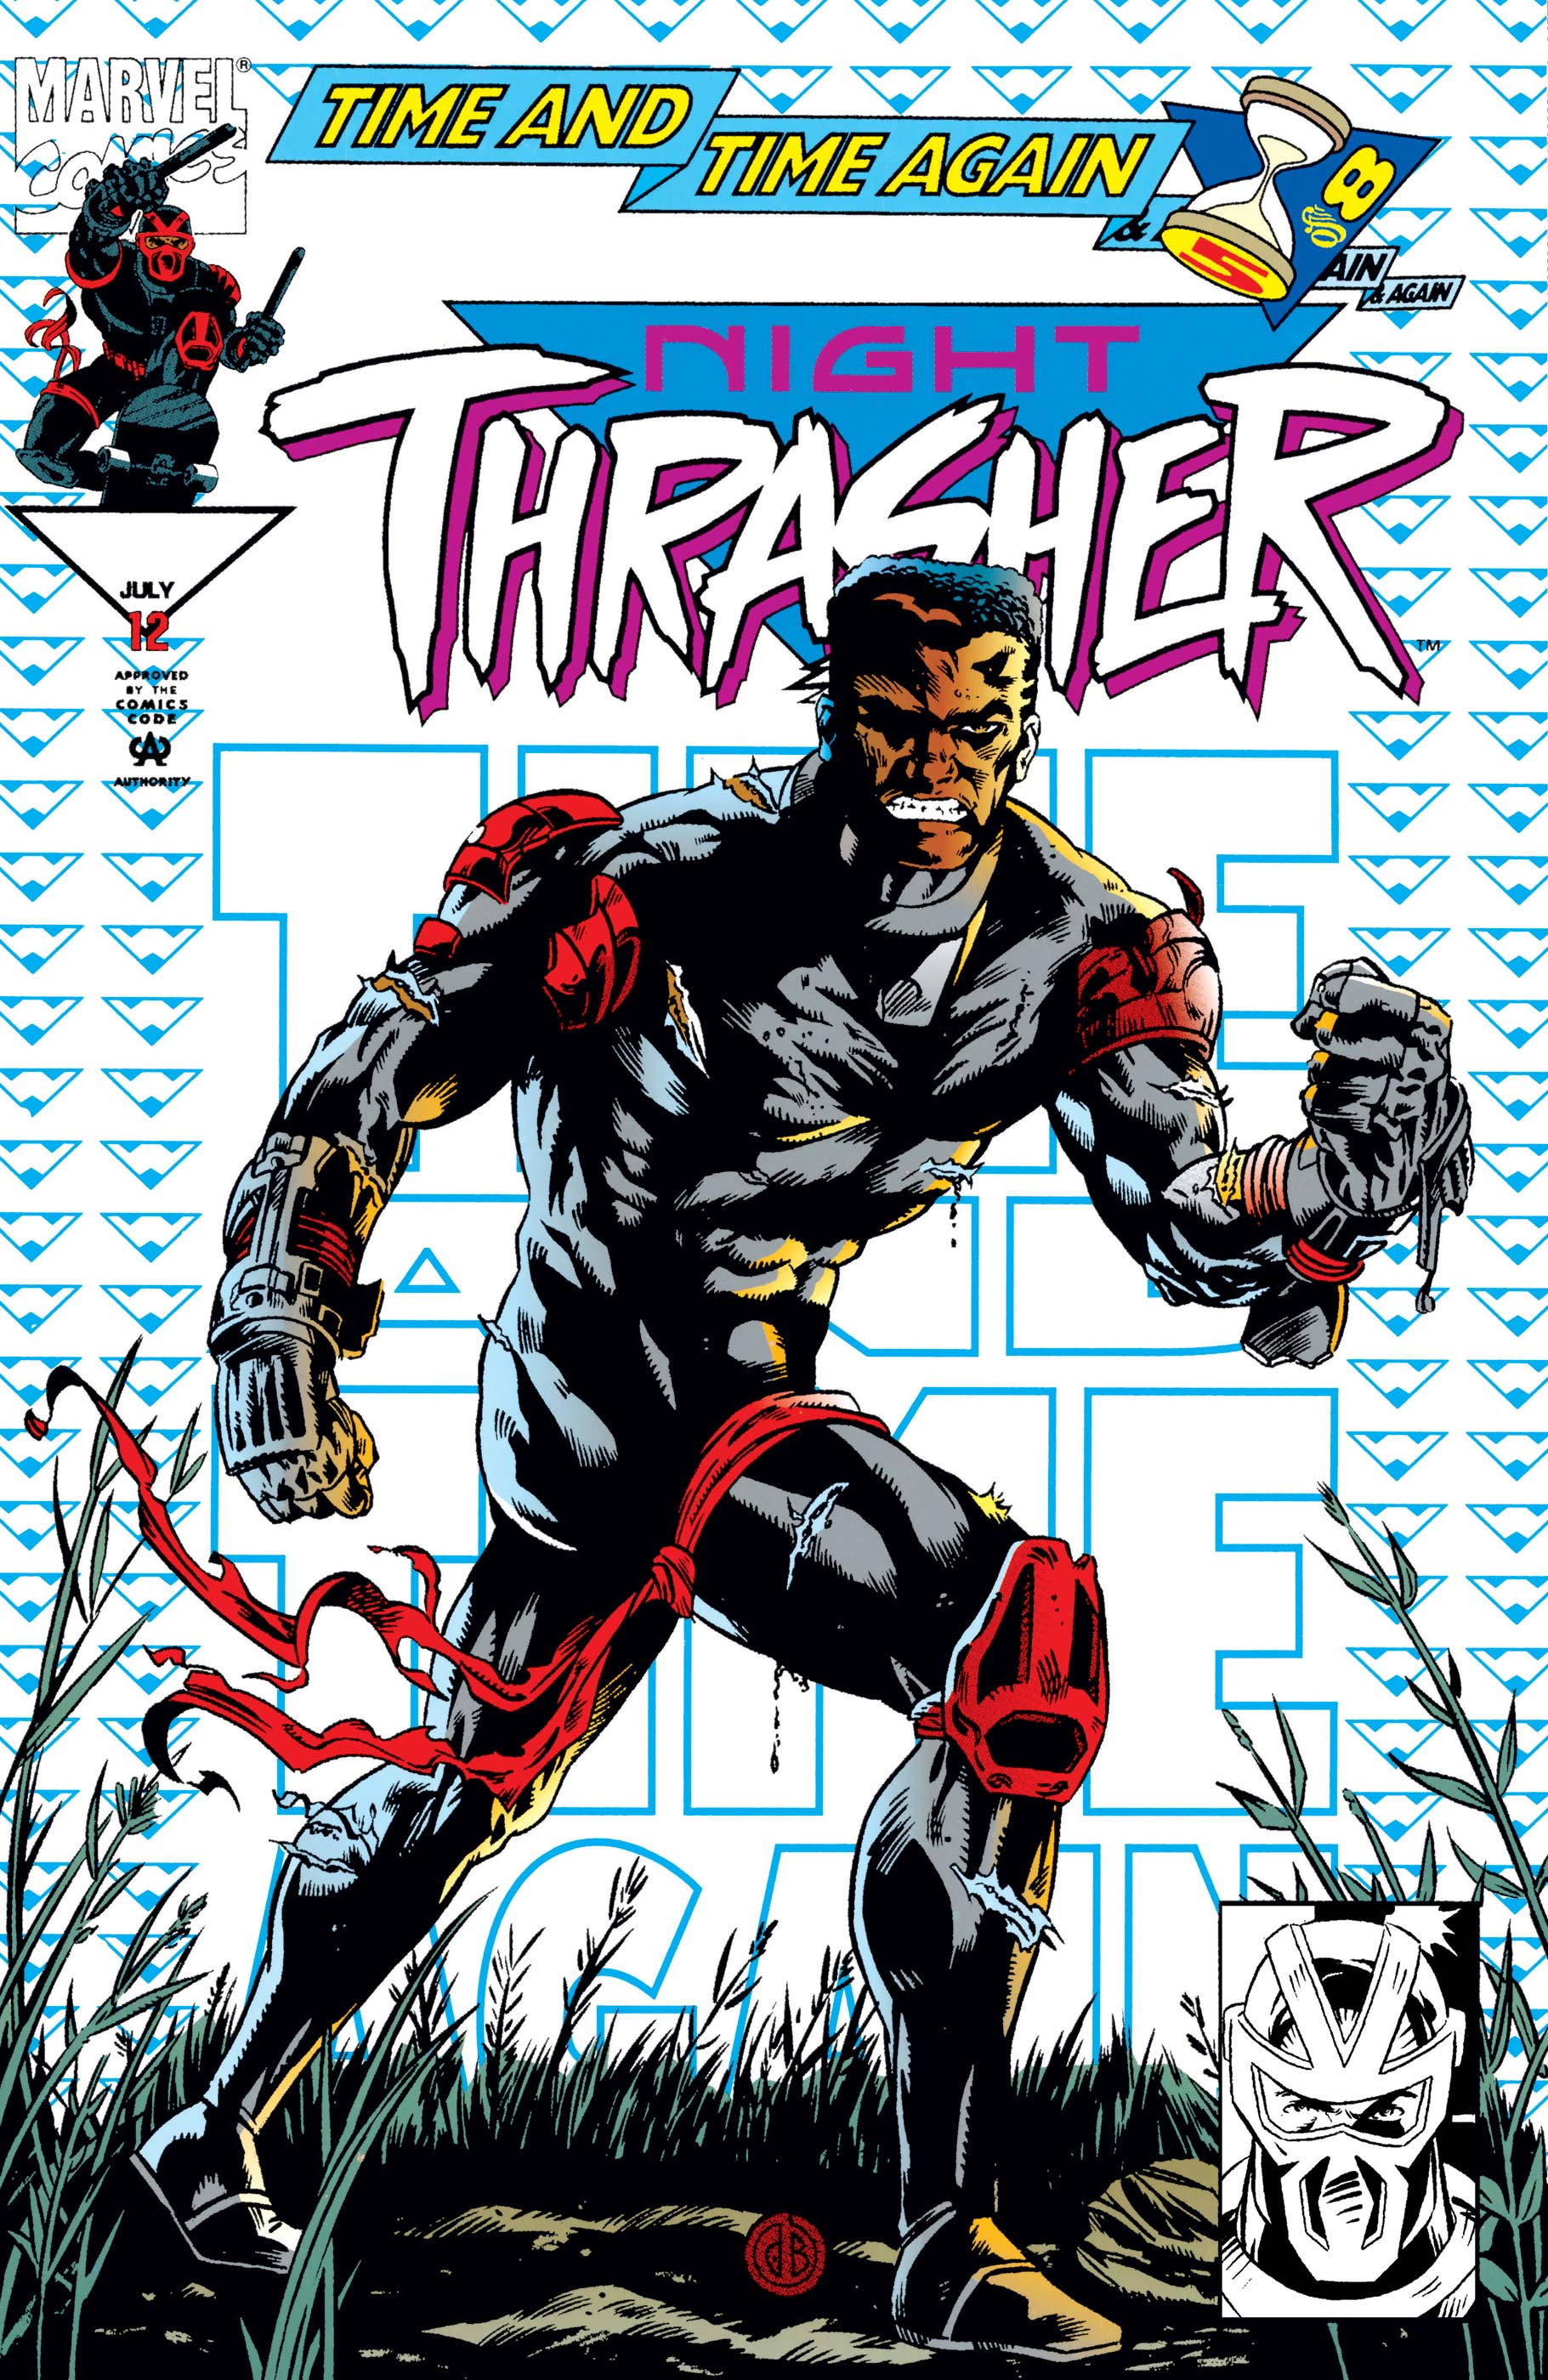 Night Thrasher (1993) #12